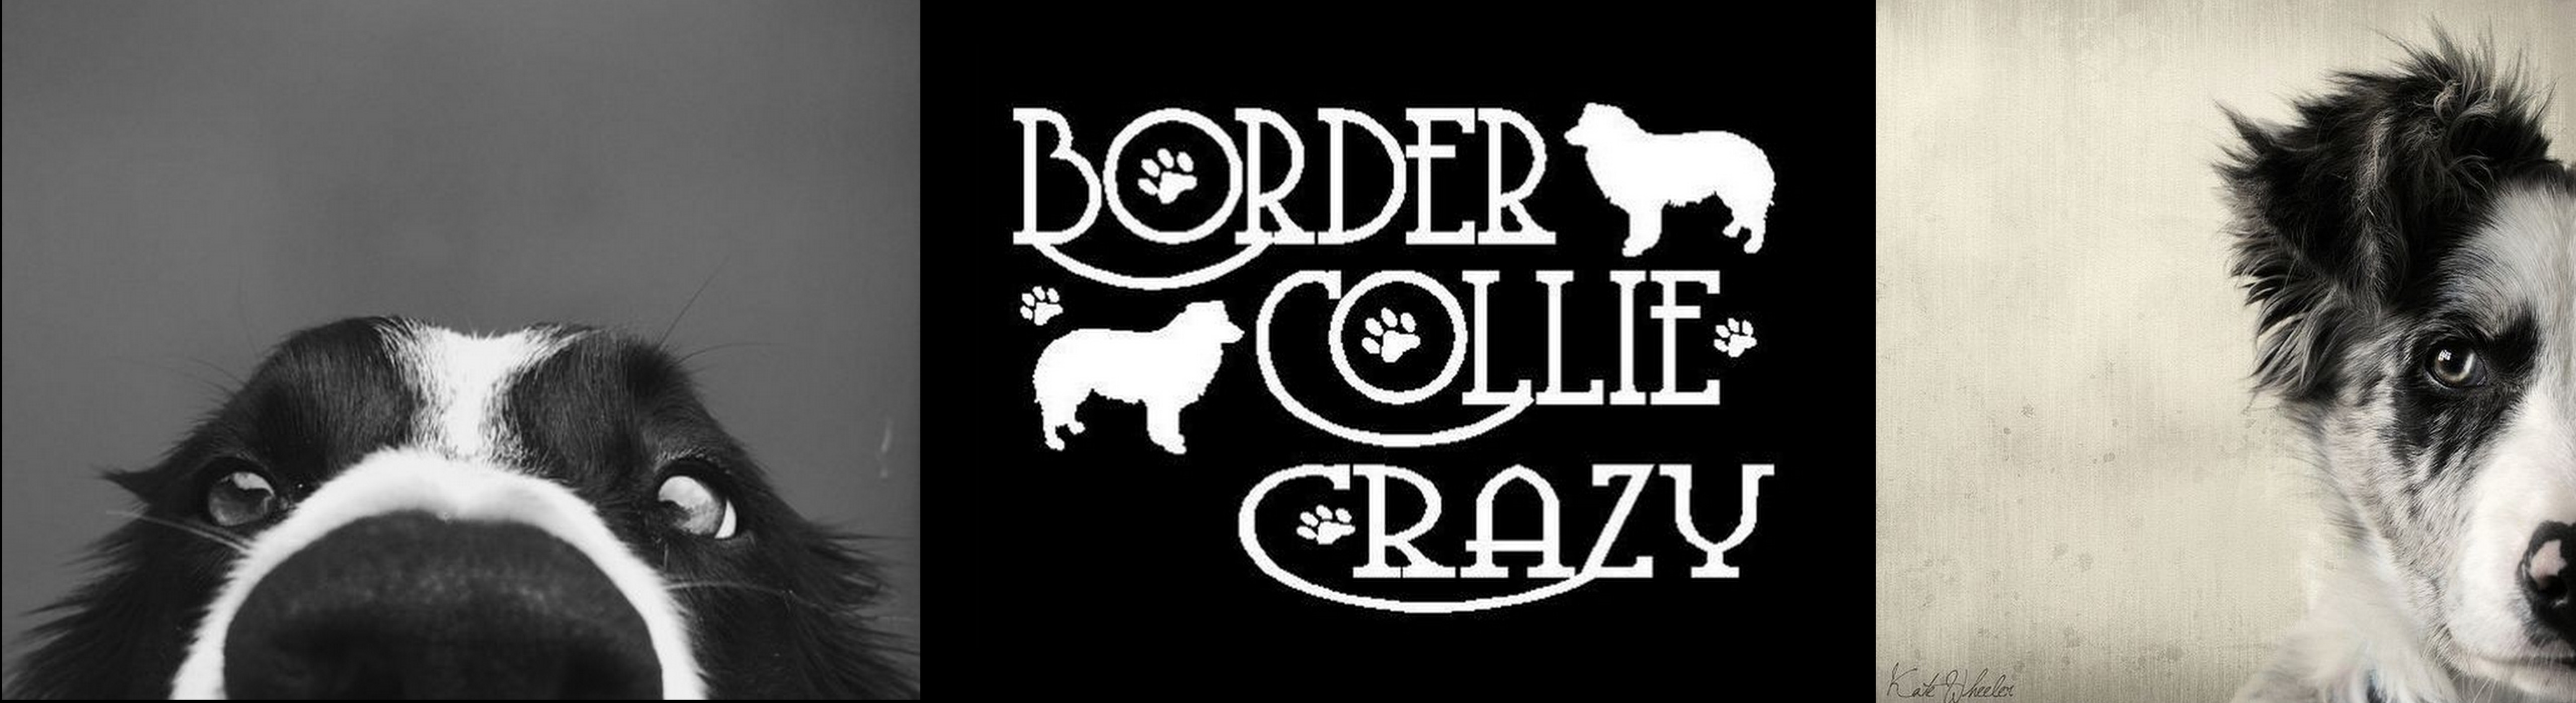 BorderCollieCrazy..